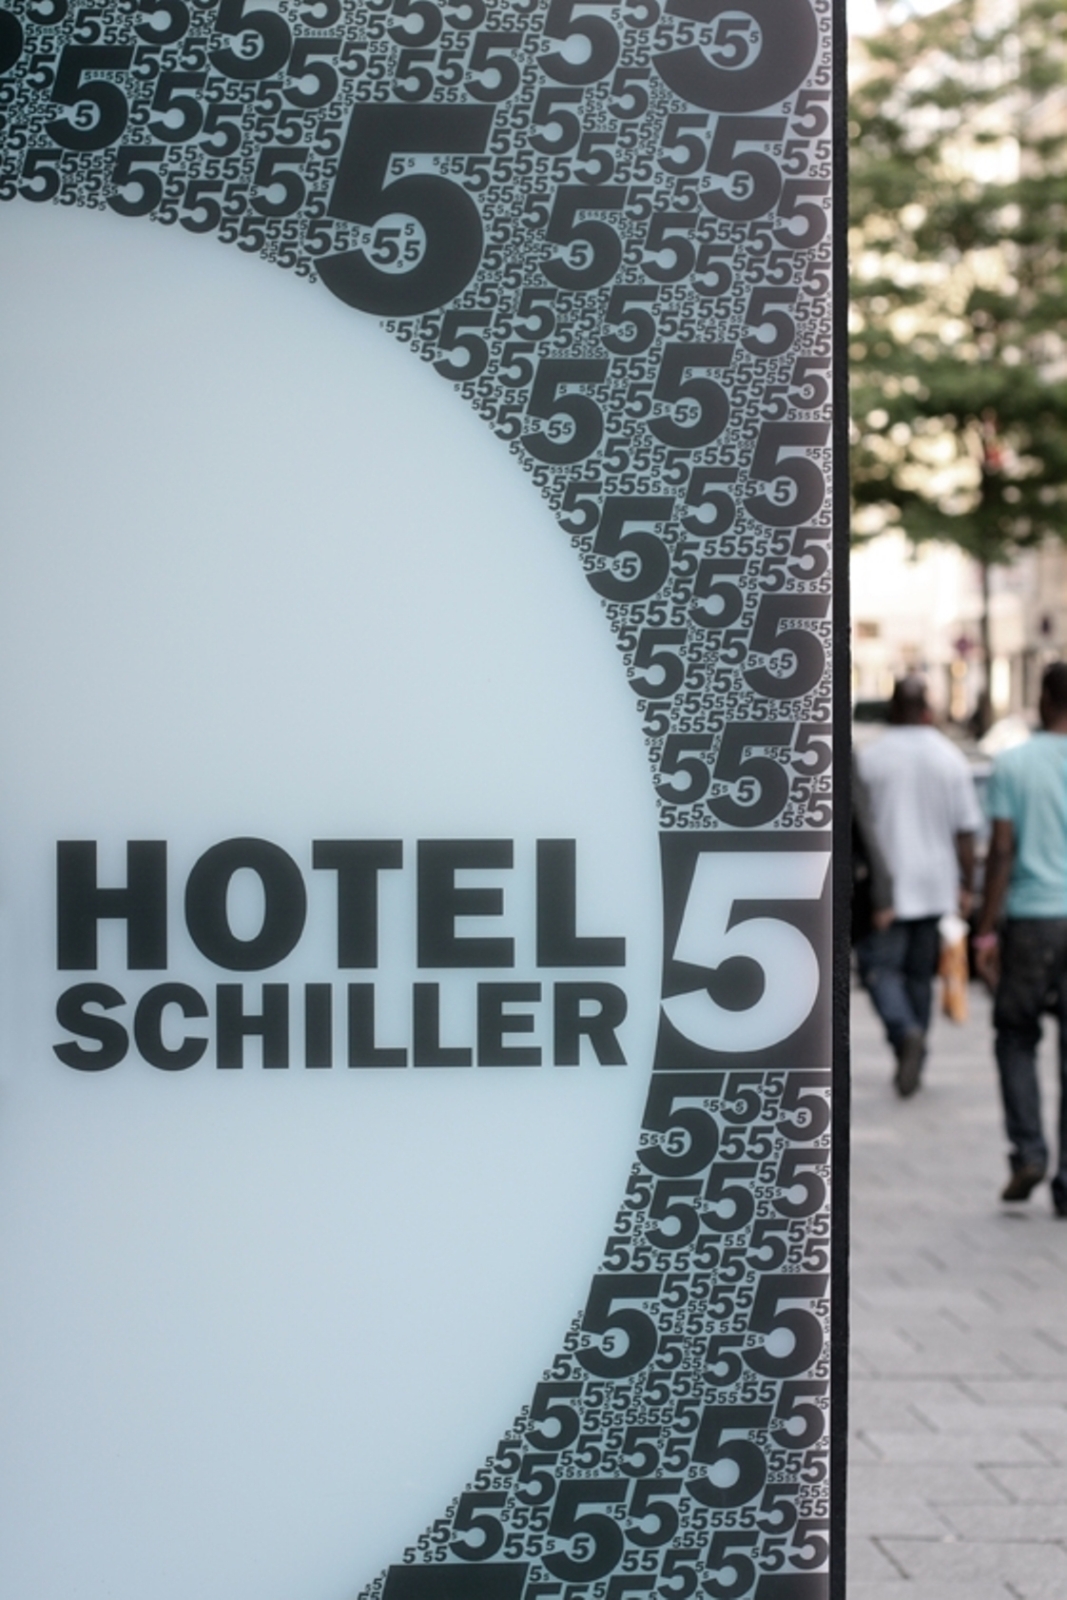 Hotel Schiller 5 (München)